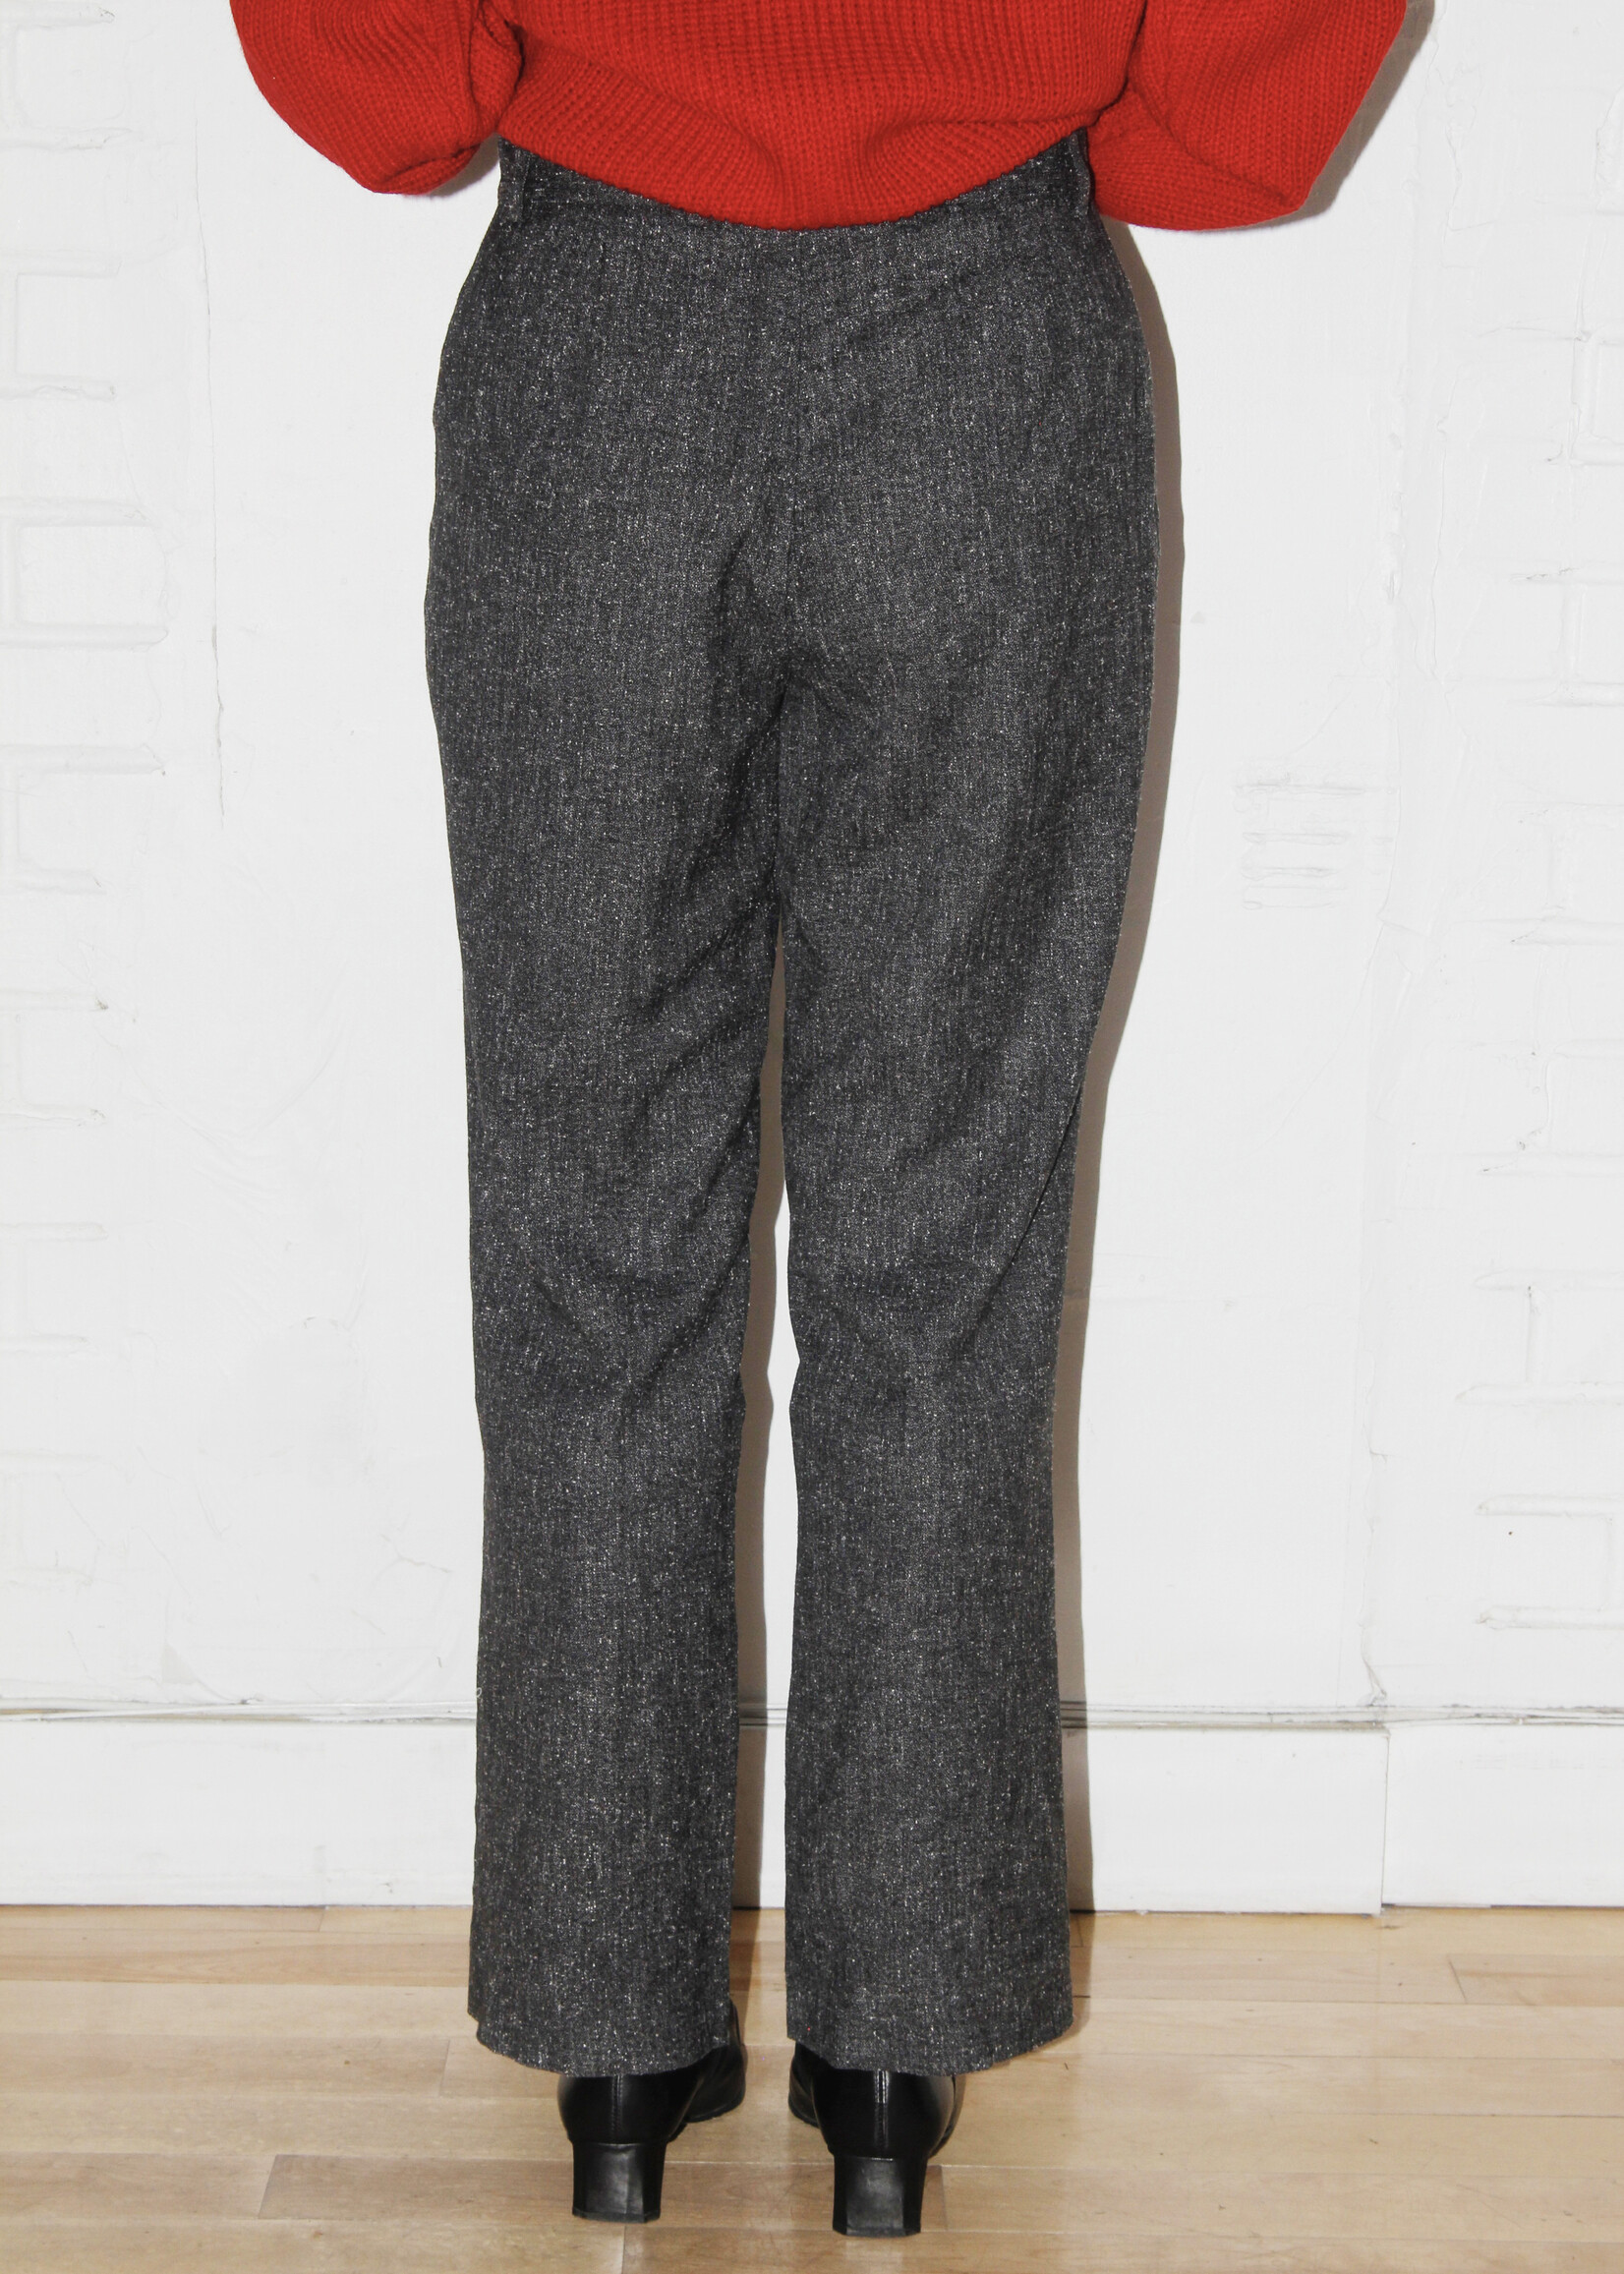 Vintage Vintage Grey Textured Pants - M